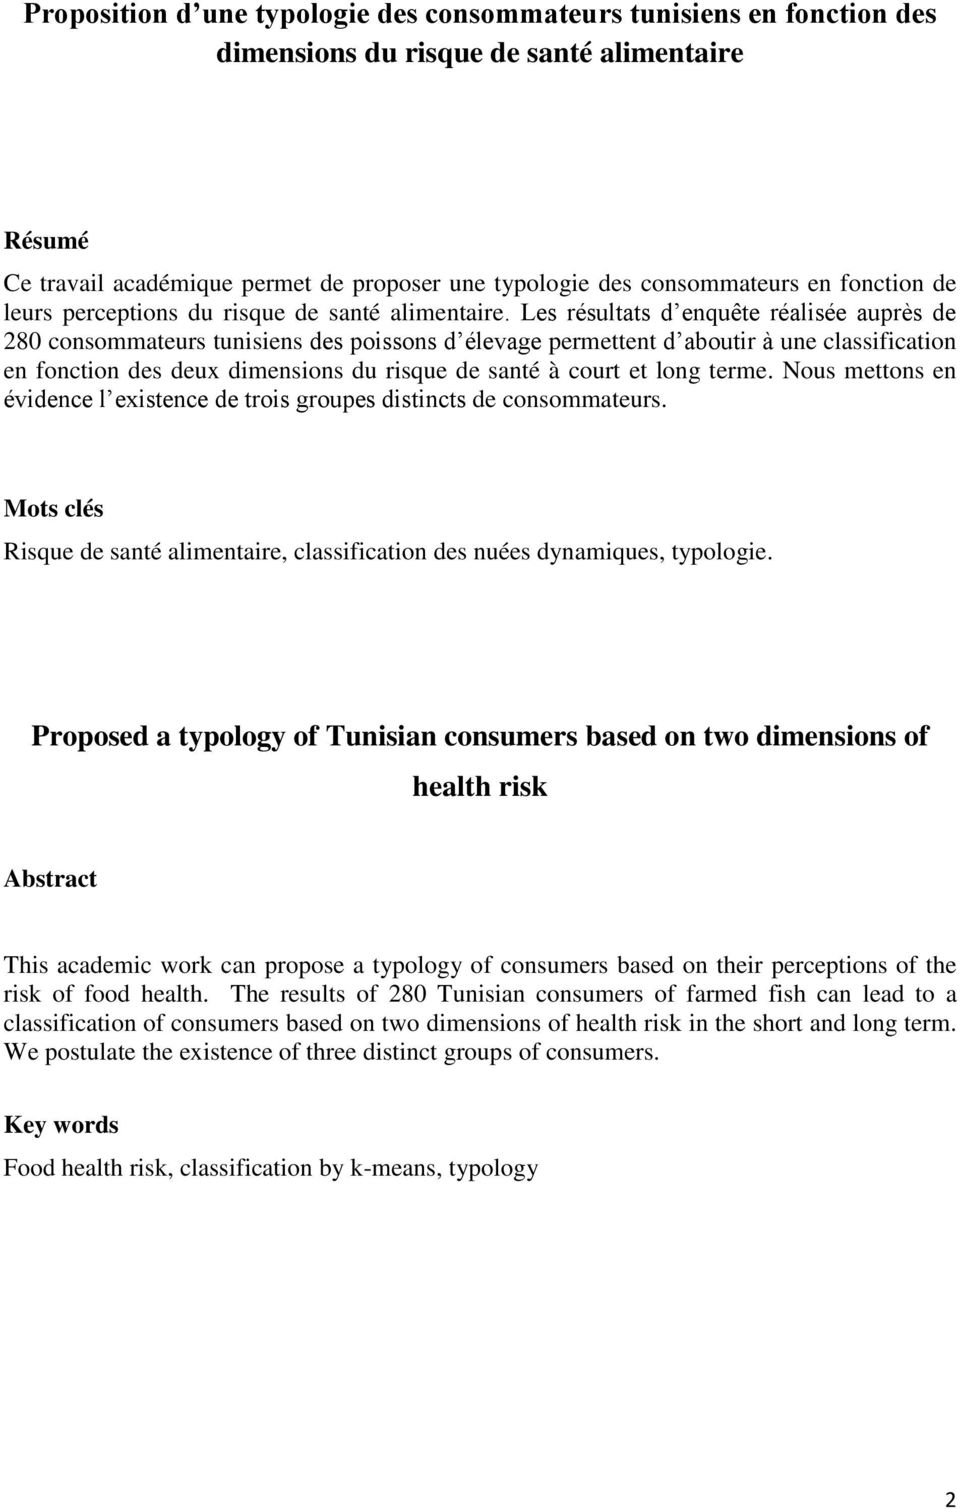 Les résultats d enquête réalisée auprès de 280 consommateurs tunisiens des poissons d élevage permettent d aboutir à une classification en fonction des deux dimensions du risque de santé à court et